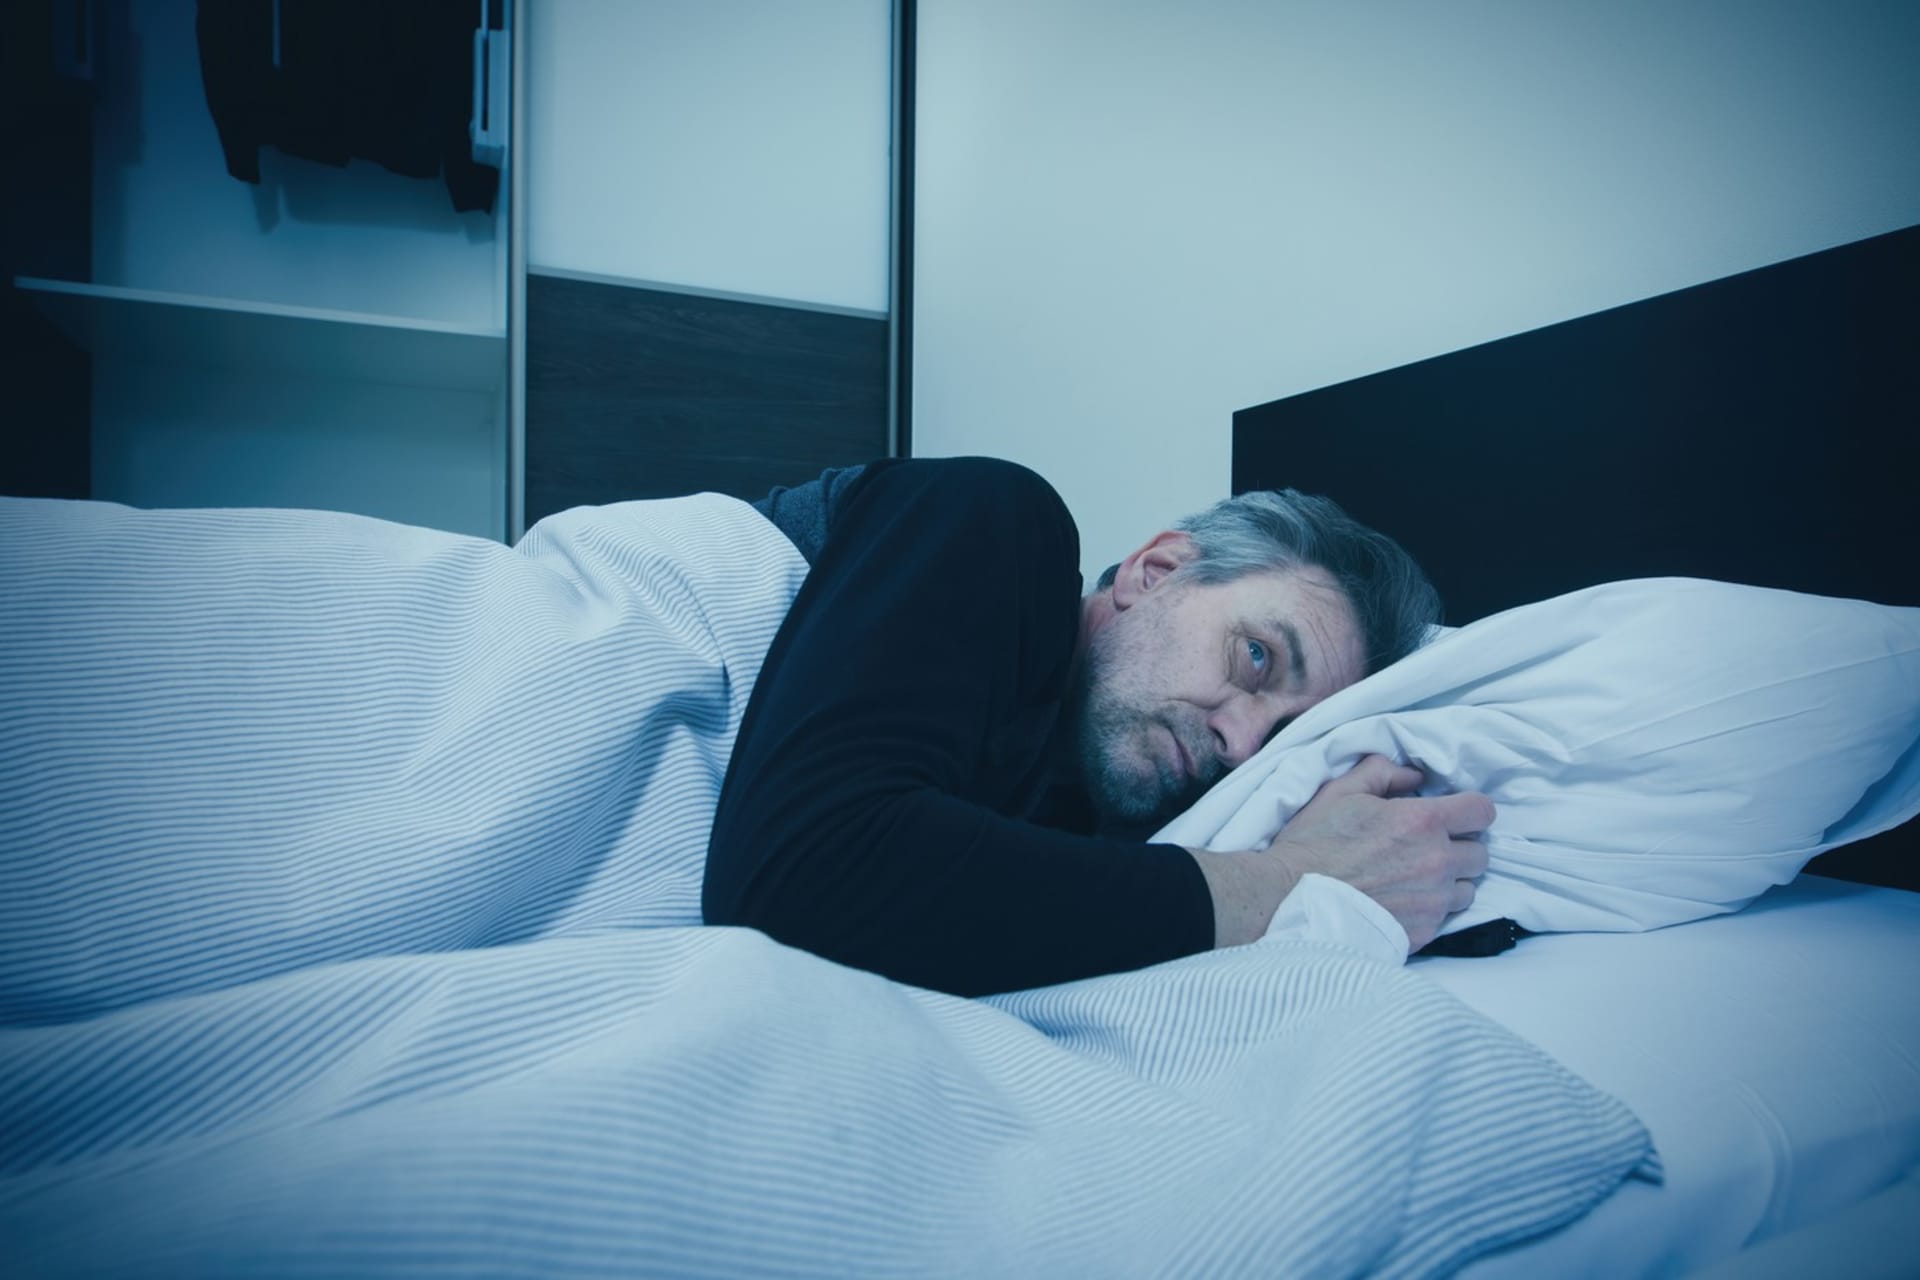 Pokud se probouzíte v noci ve stejnou hodinu déle než tři měsíce, měli byste problém řešit s odborníky